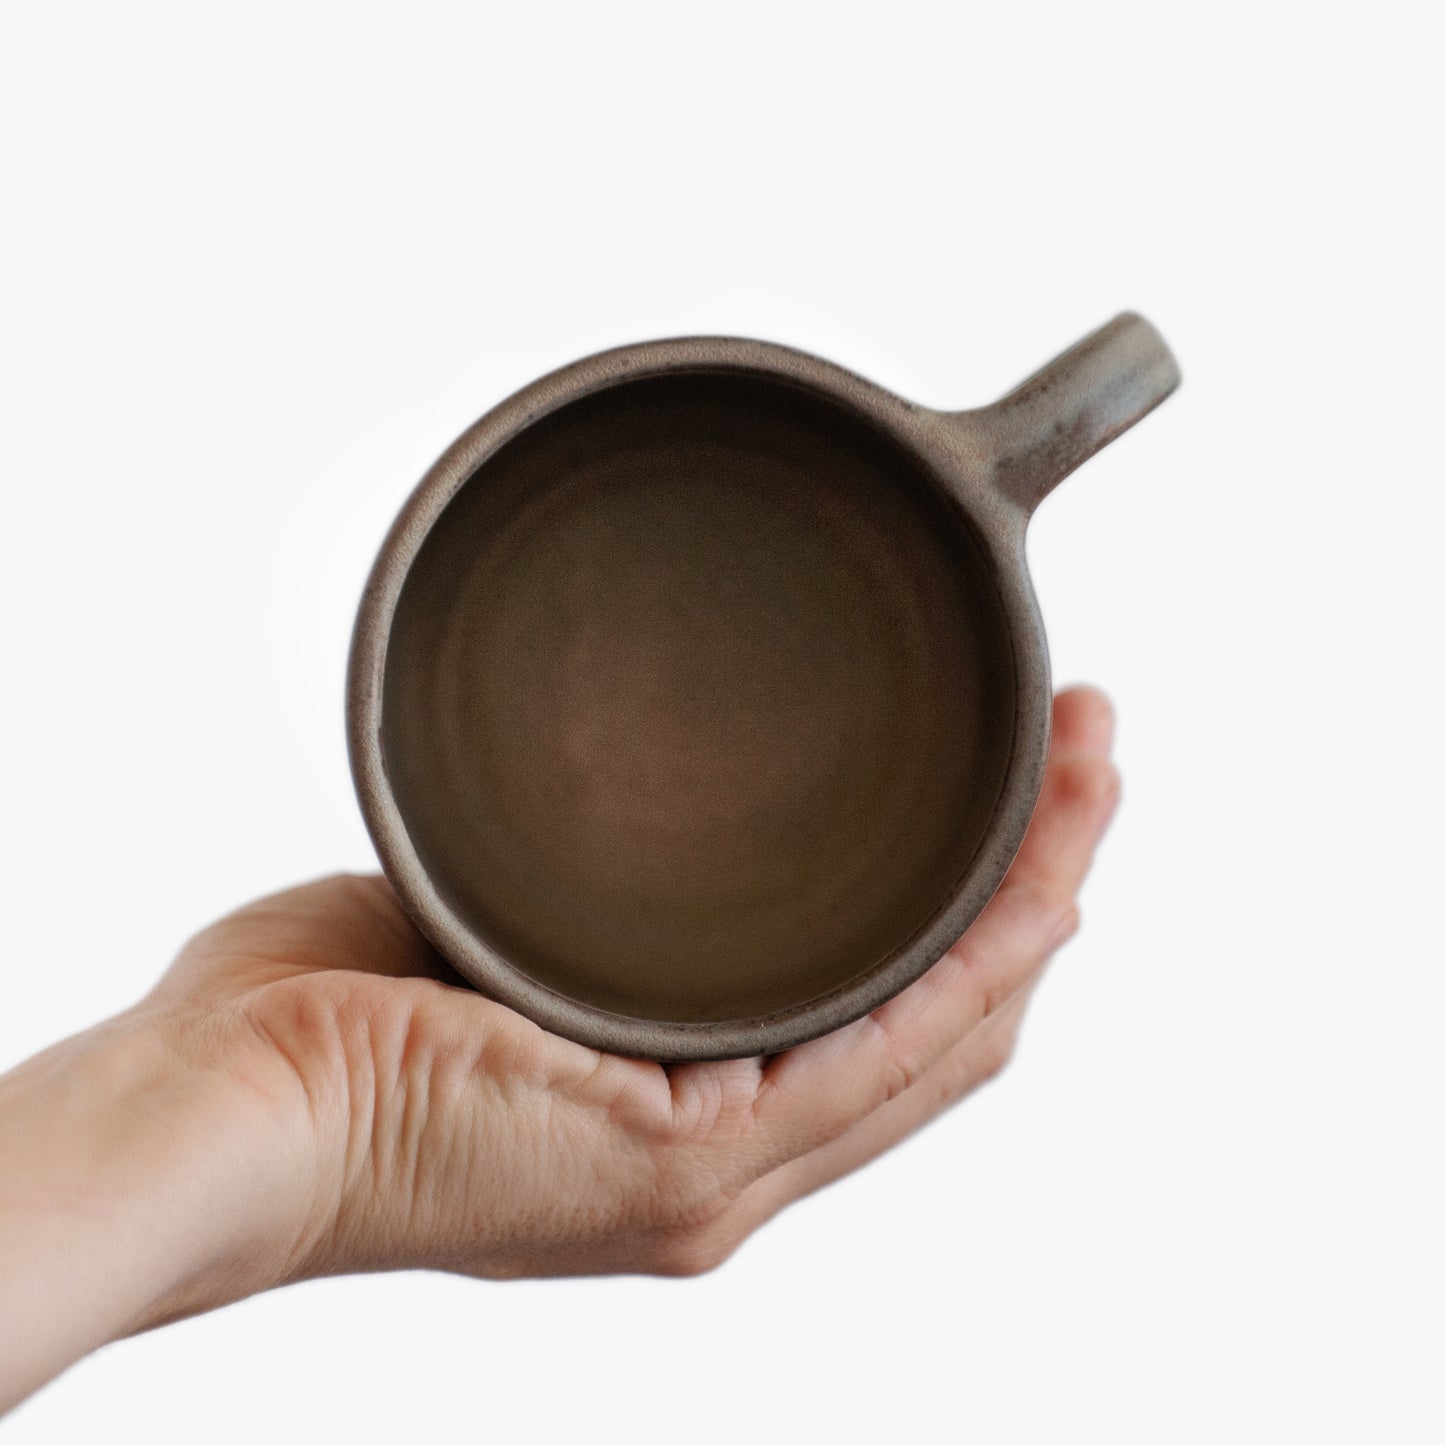 coffee or tea mug in grey-green